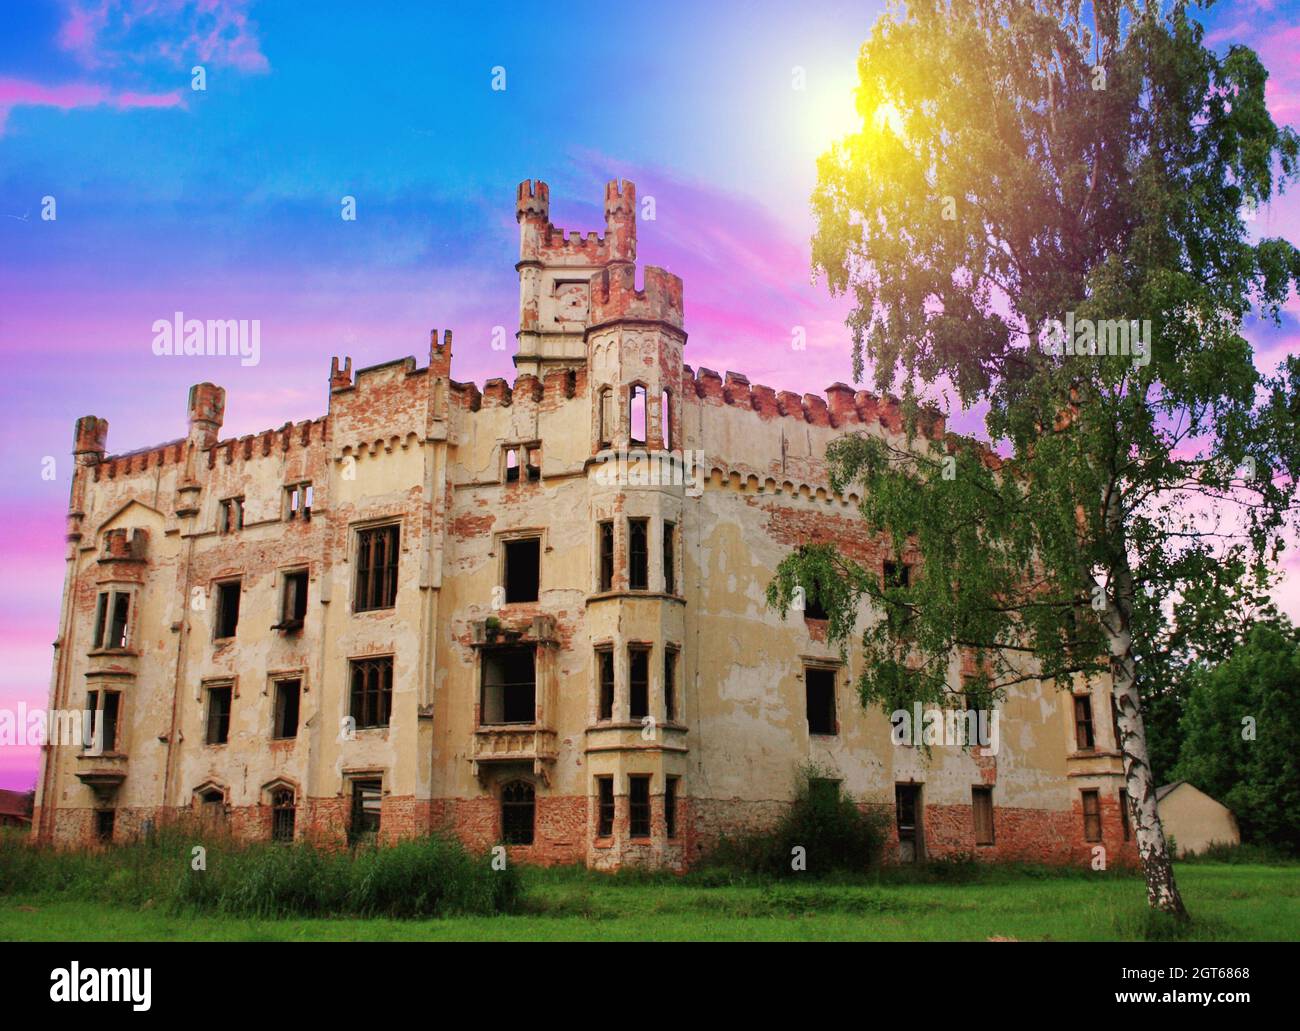 El castillo de Český Rudolec (arquitectura gótica) es un municipio y pueblo del distrito de Jindřichův Hradec, en la región bohemia del sur del CZE Foto de stock